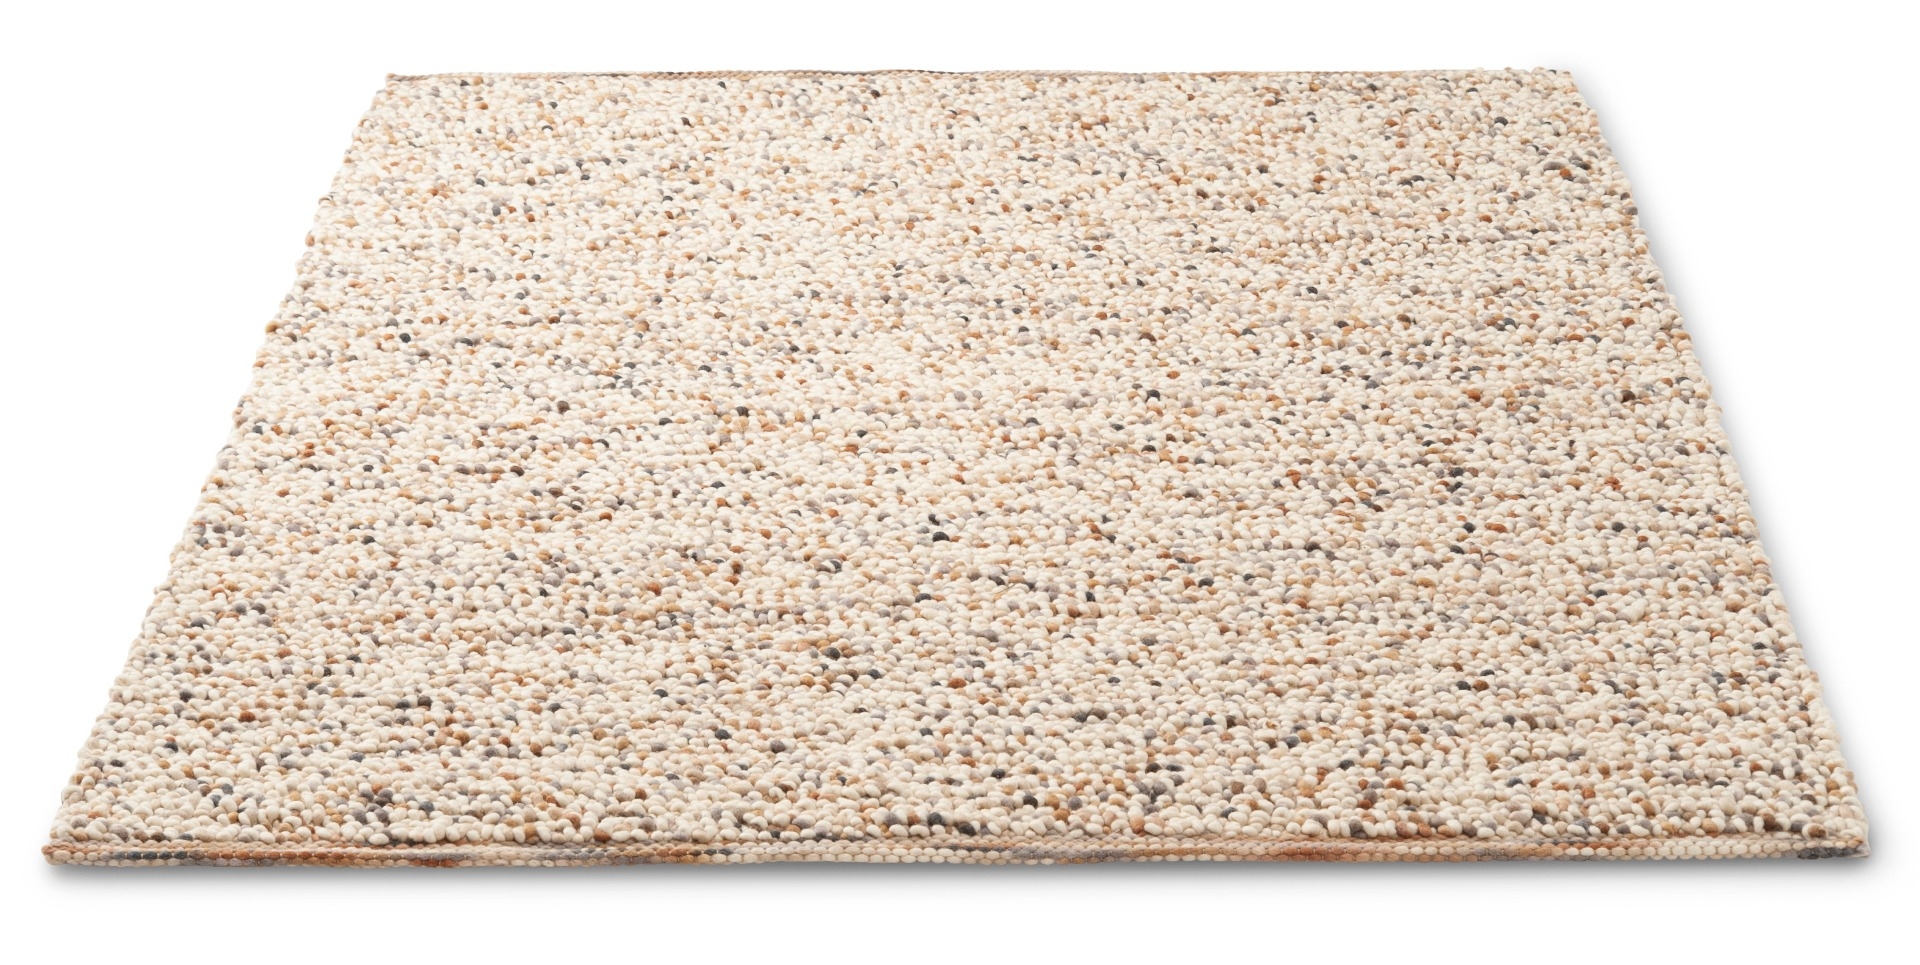 Beach Sand Handwoven Rug ☞ Size: 170 x 240 cm